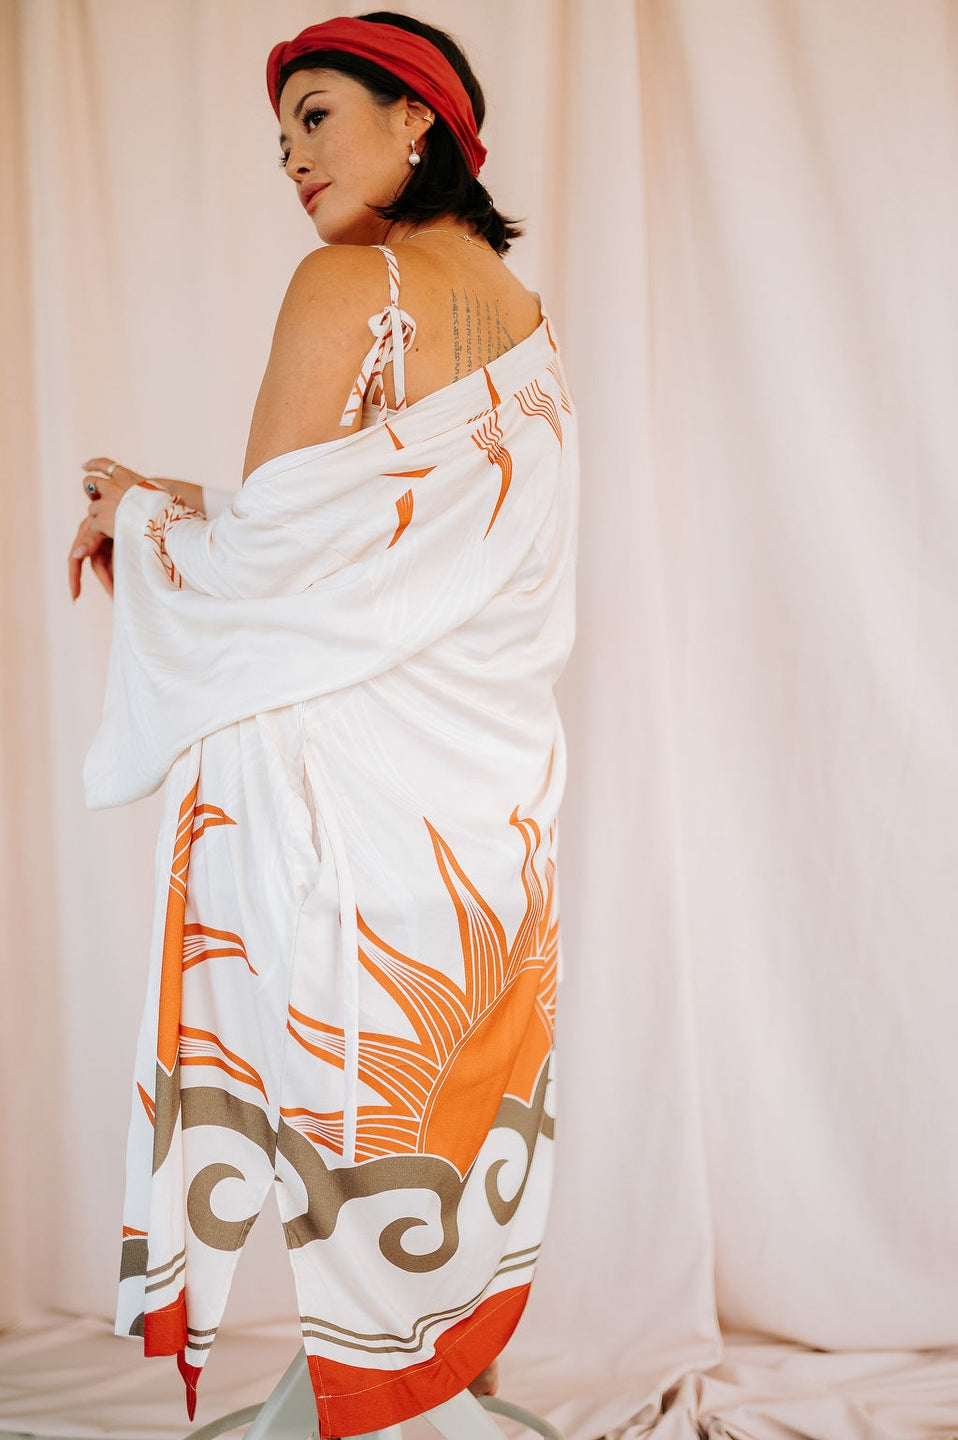 Alma Furisode Kimono